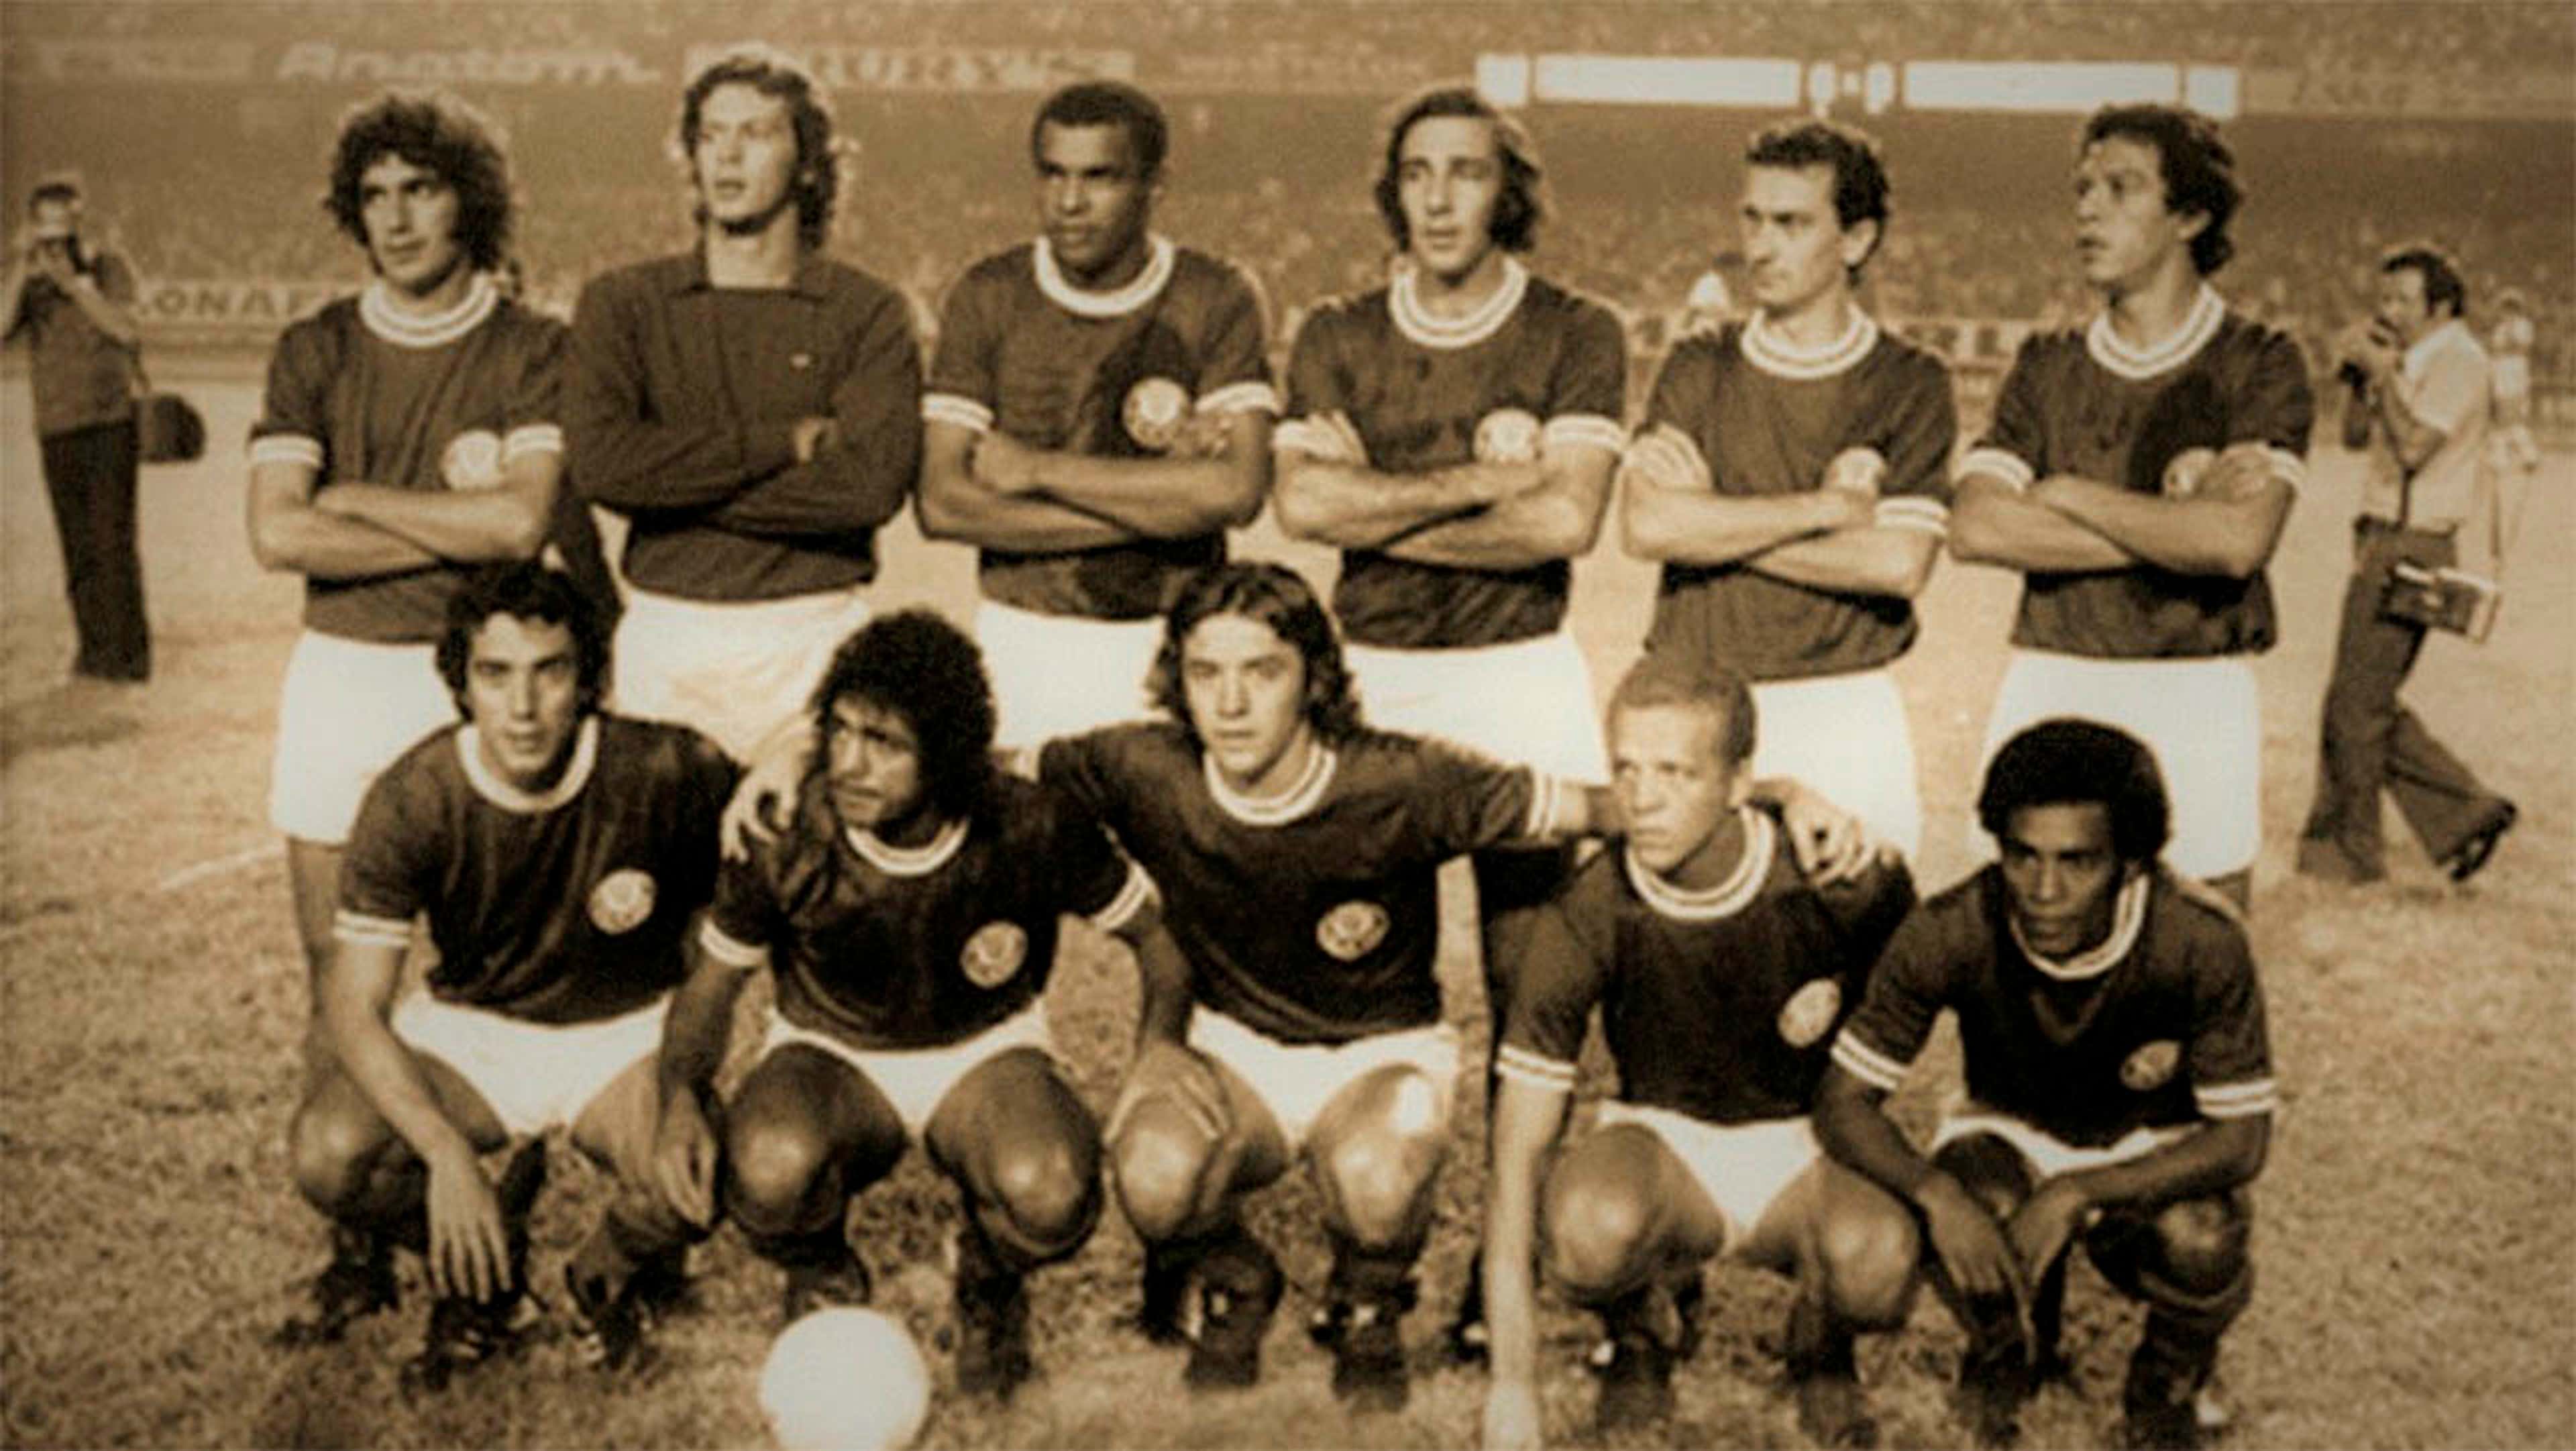 Campeonato Brasileiro – 1972